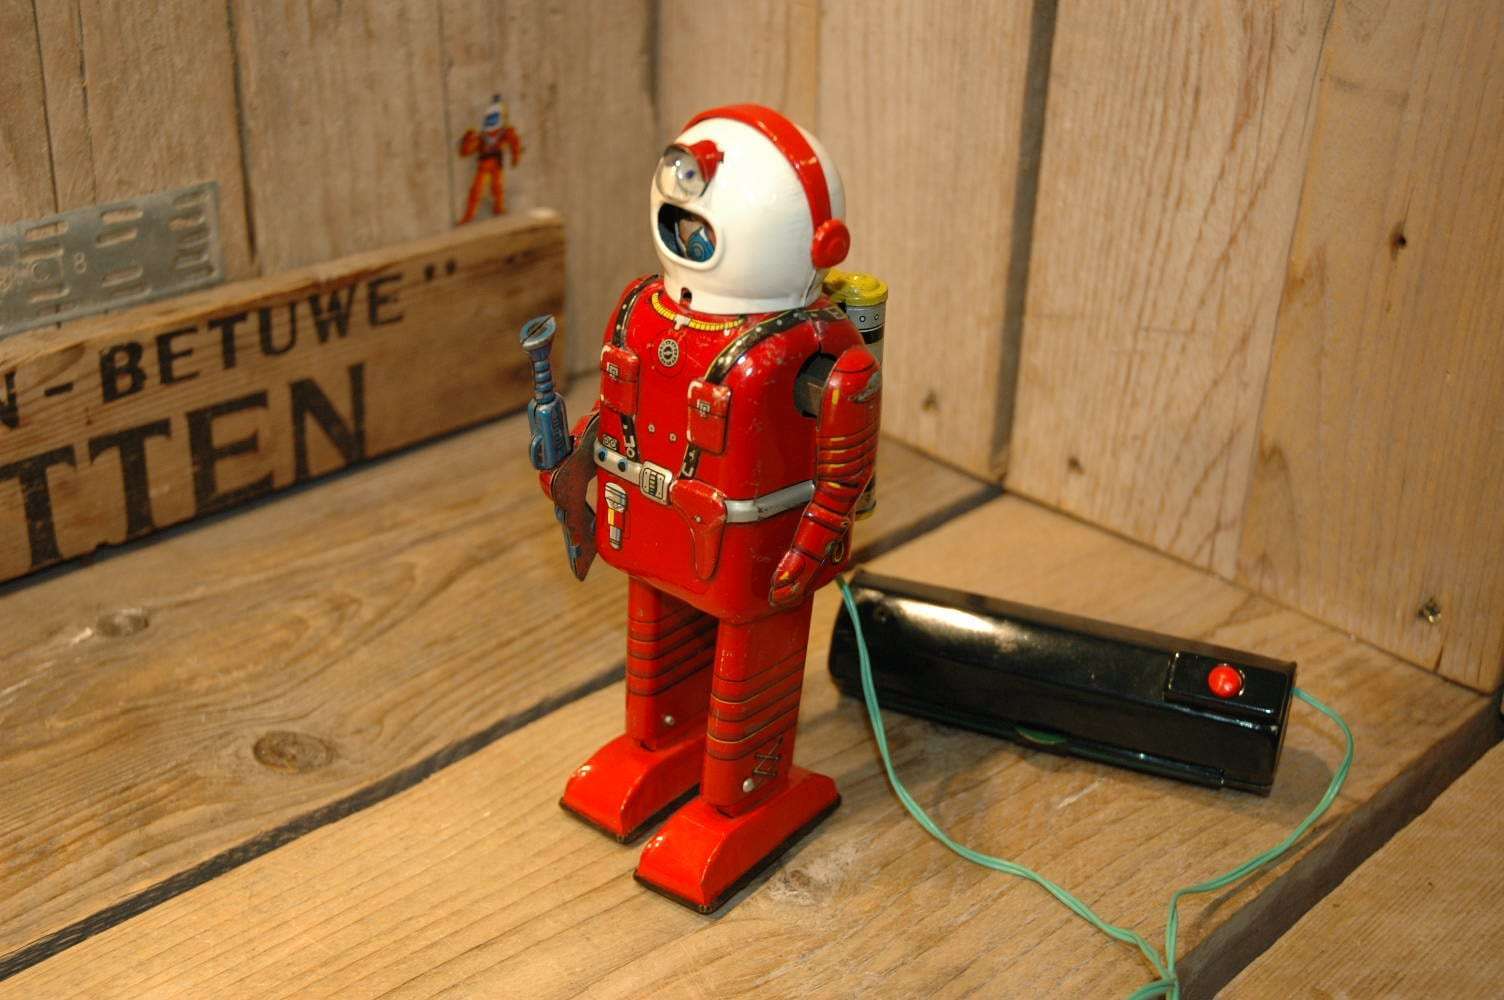 Linemar - Spaceman aka Porthole Robot